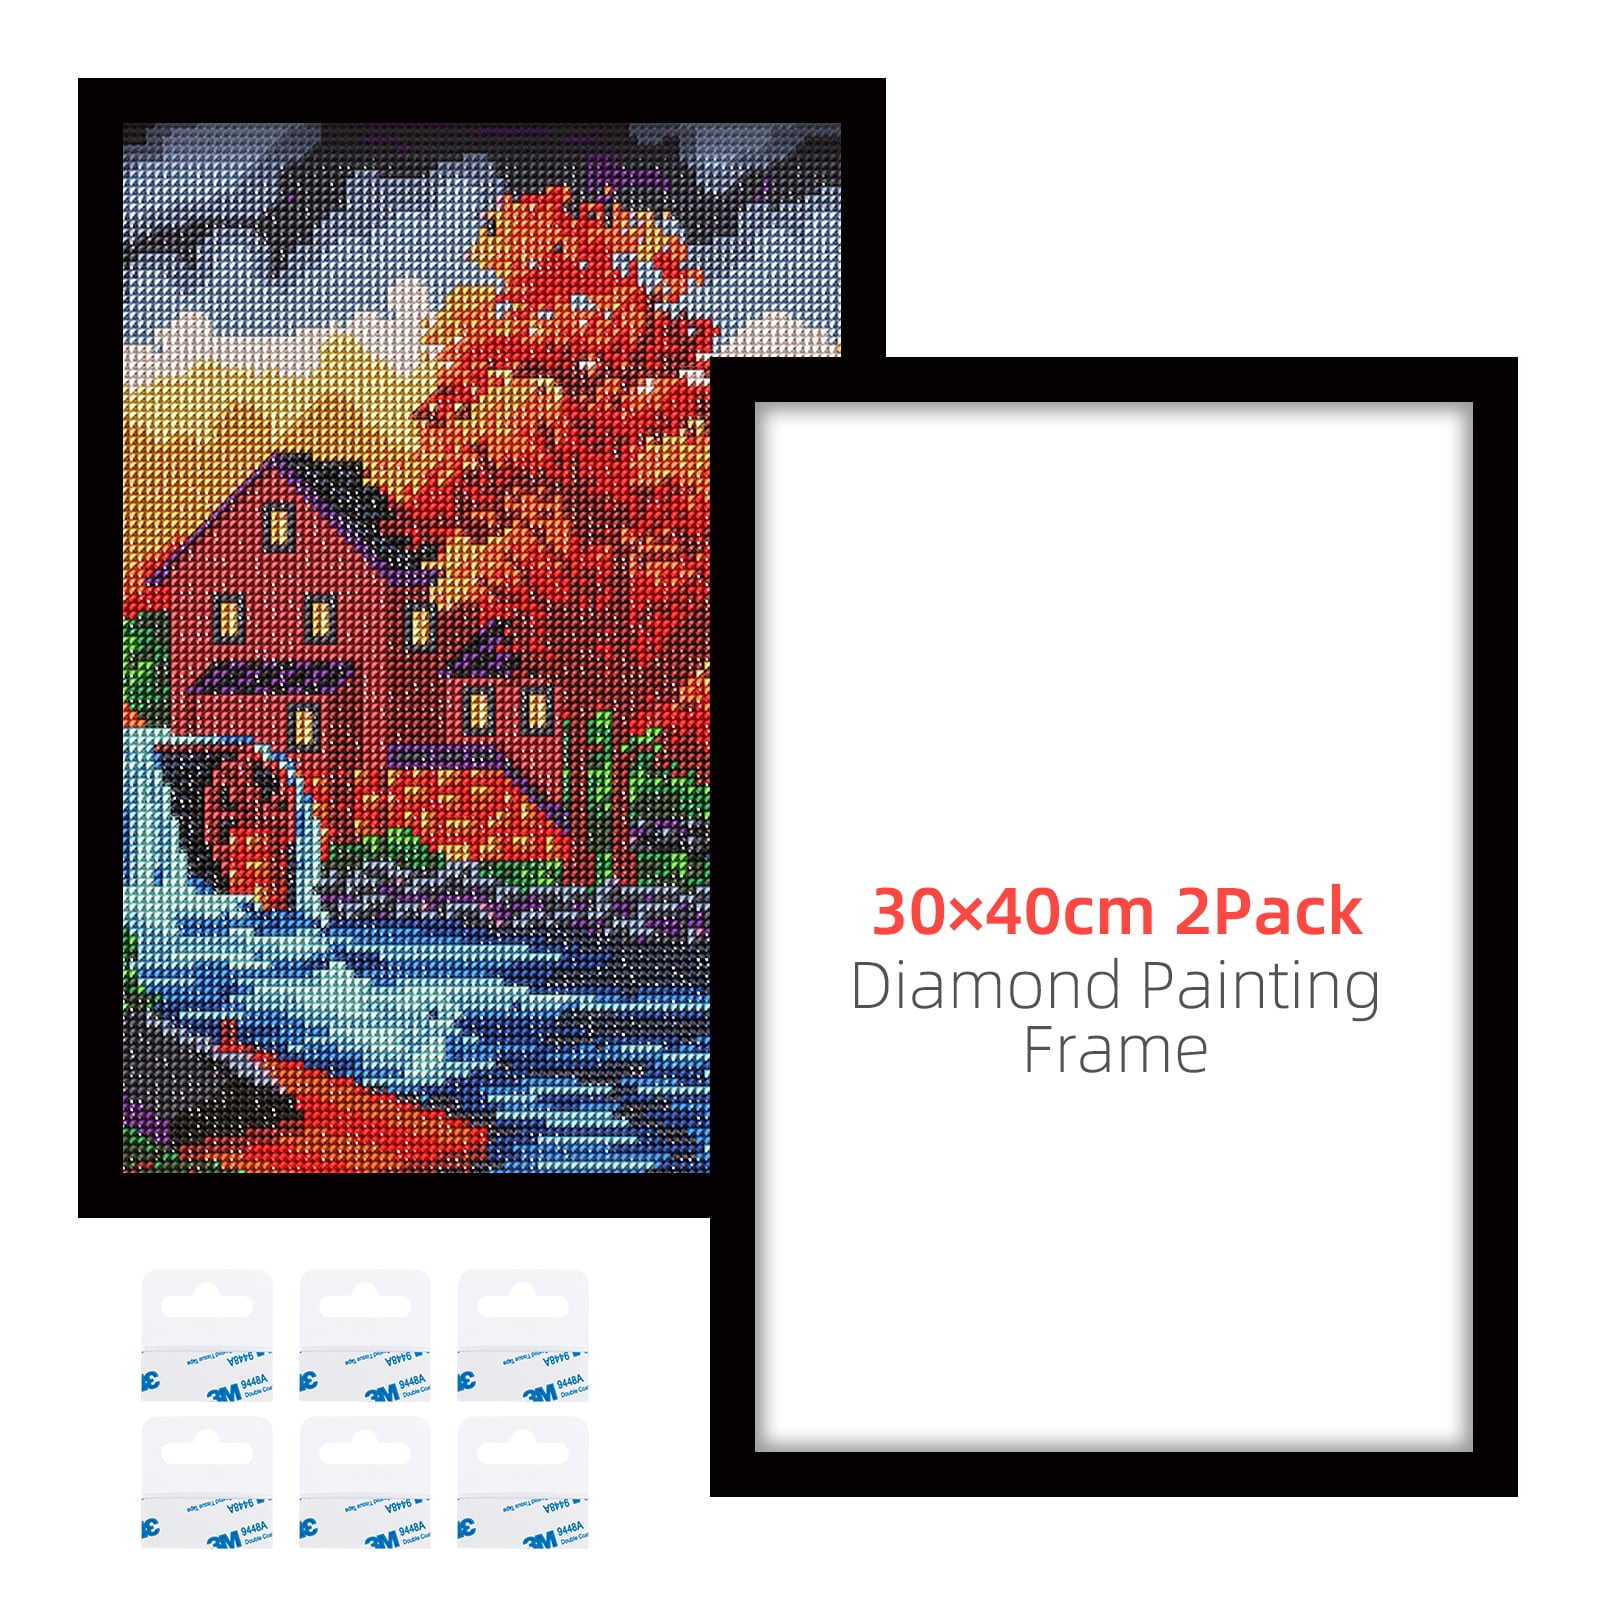 2pack Diamond Painting Frames, Frames For 12x16in/30x40cm Diamond